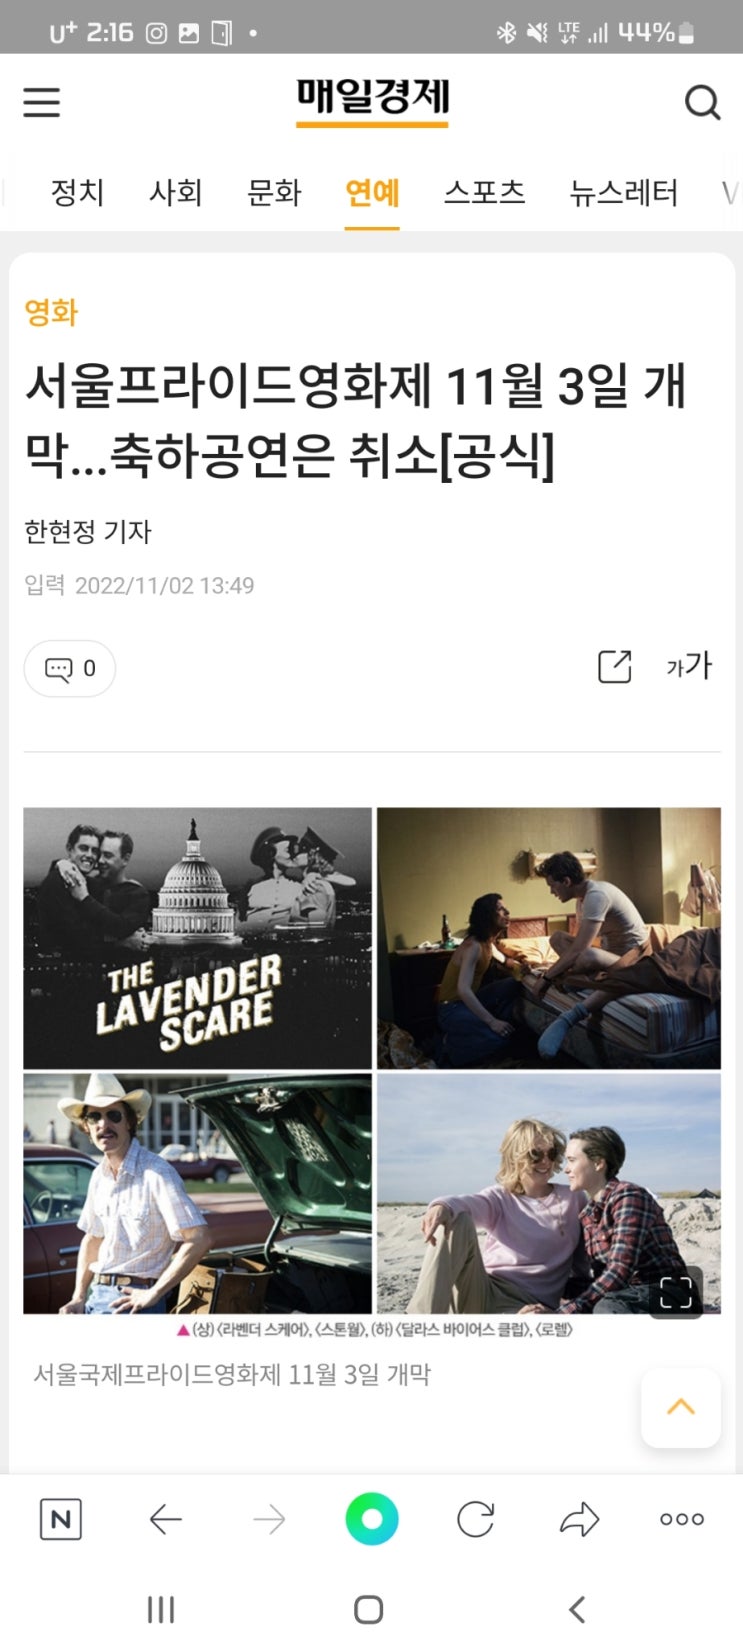 서울프라이드영화제 11월 3일 개막...축하공연은 취소[공식]